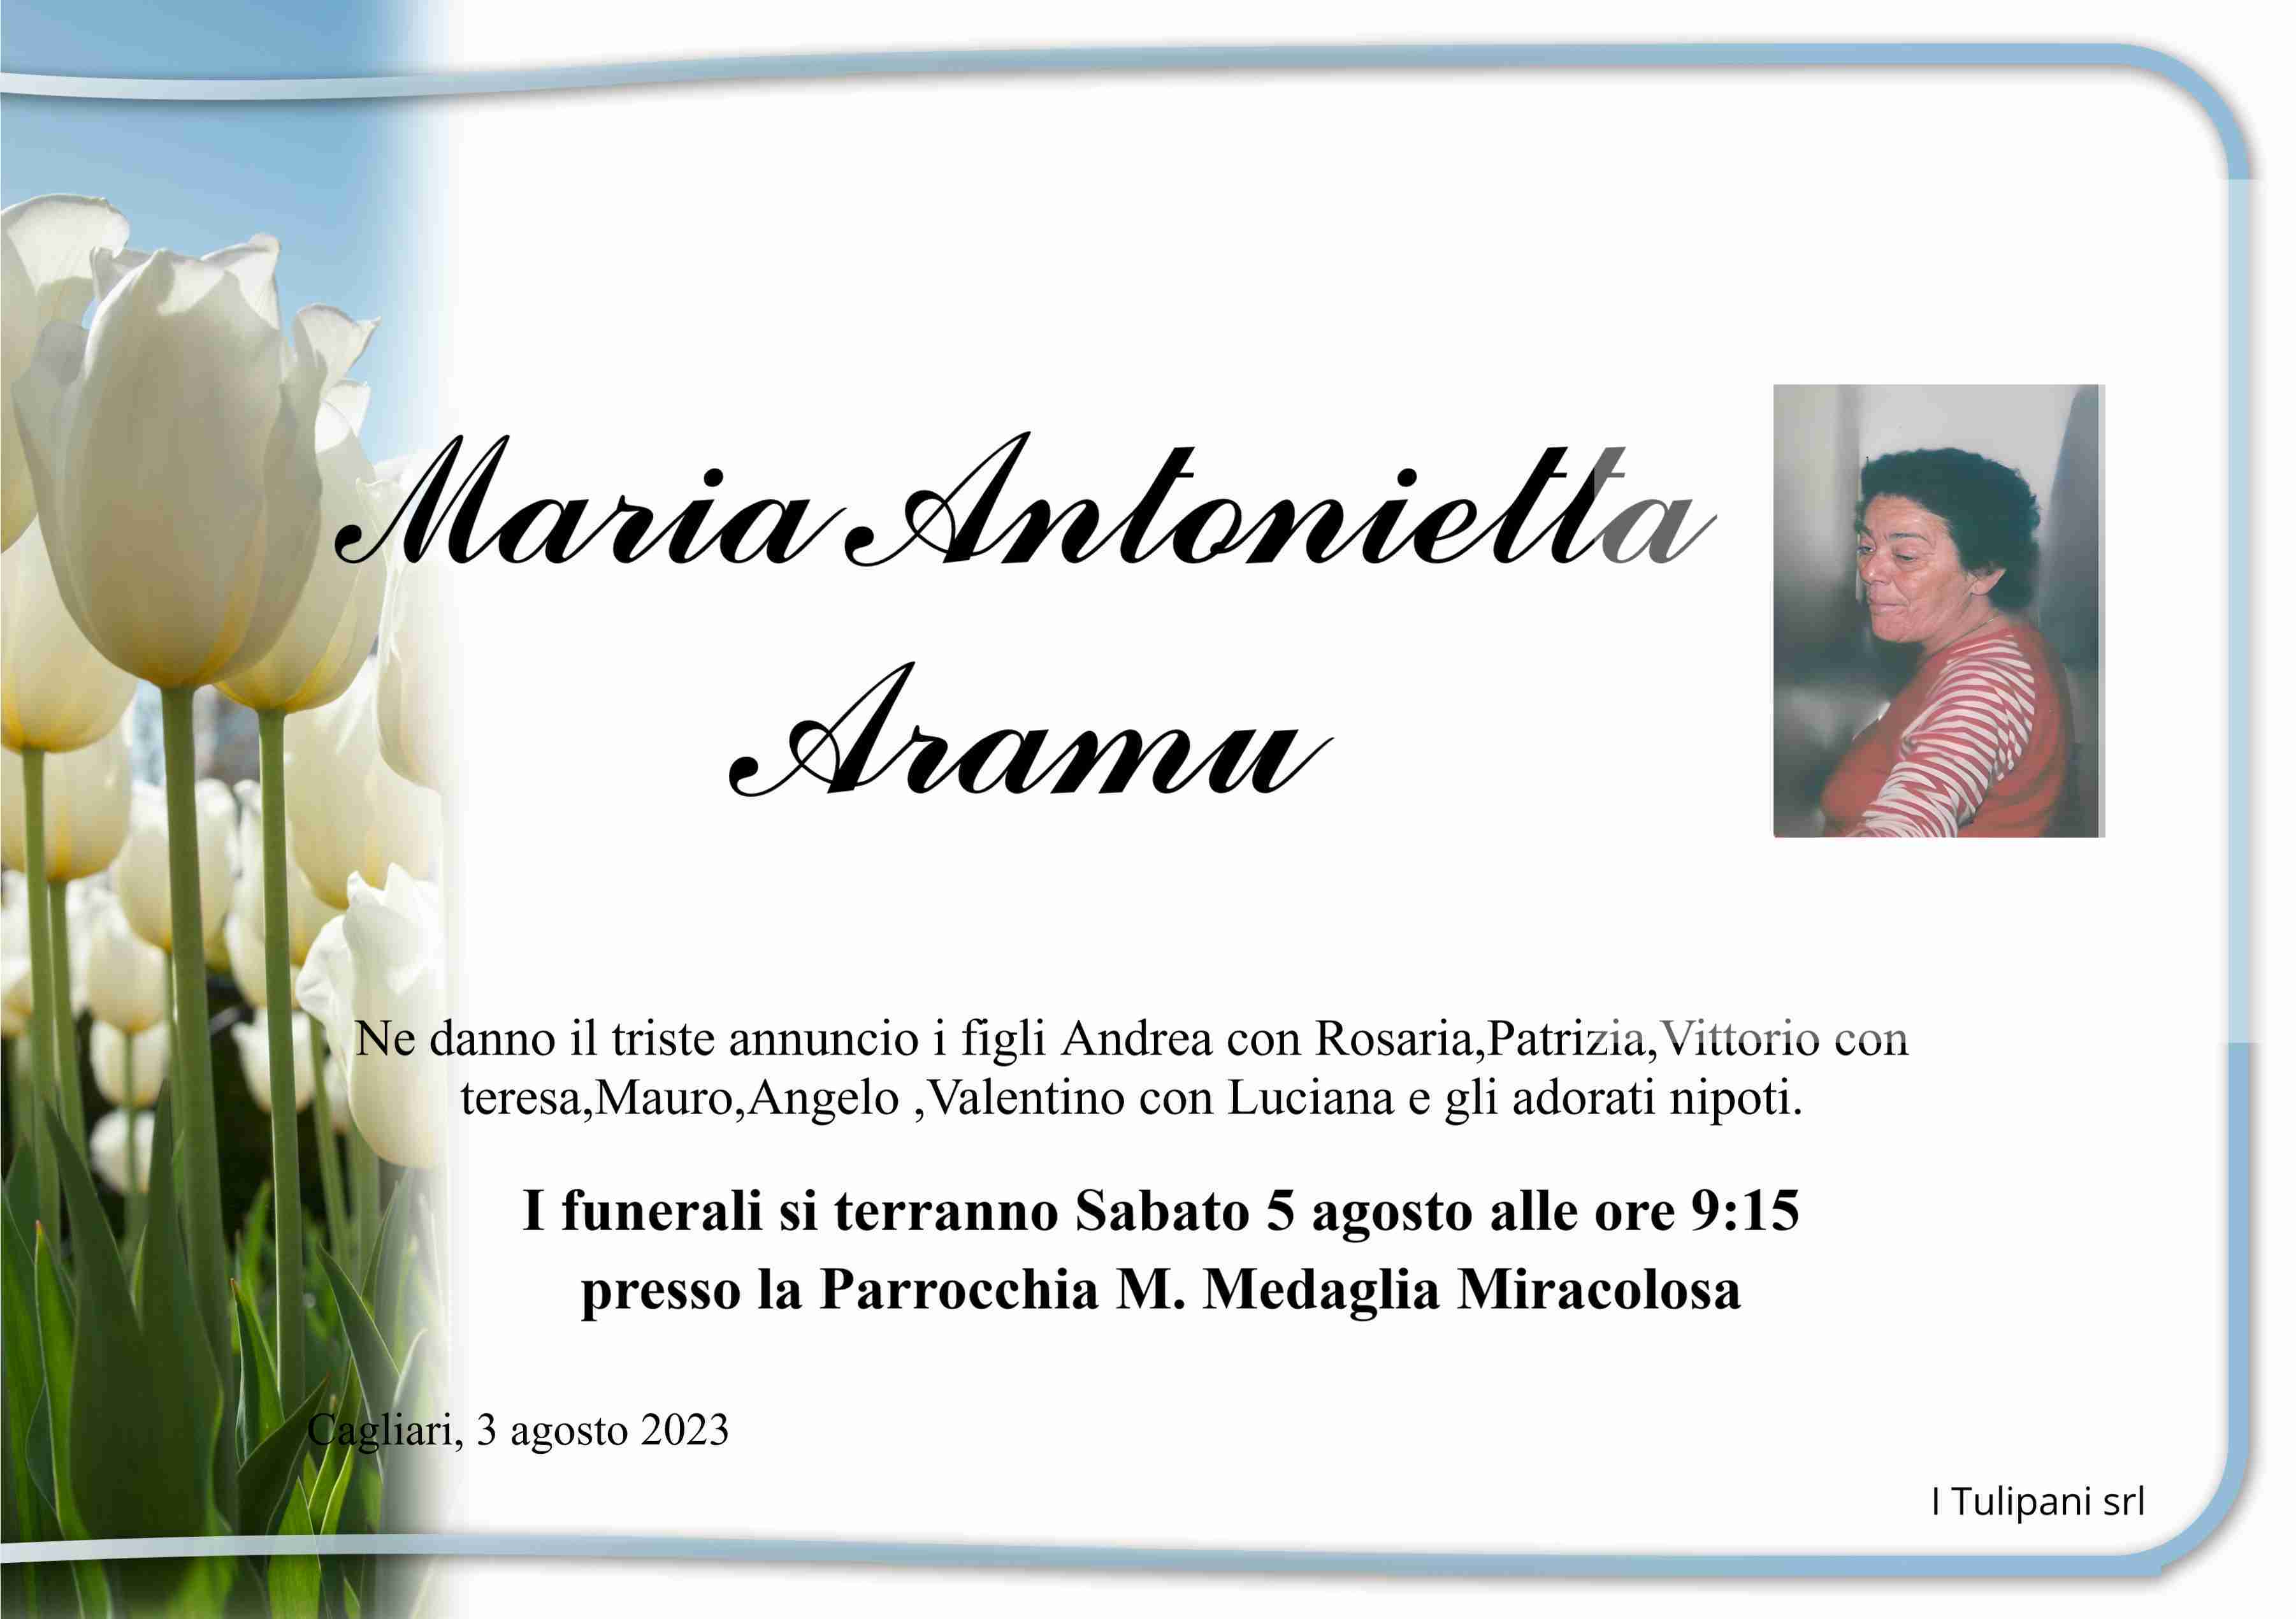 Maria Antonietta Aramu